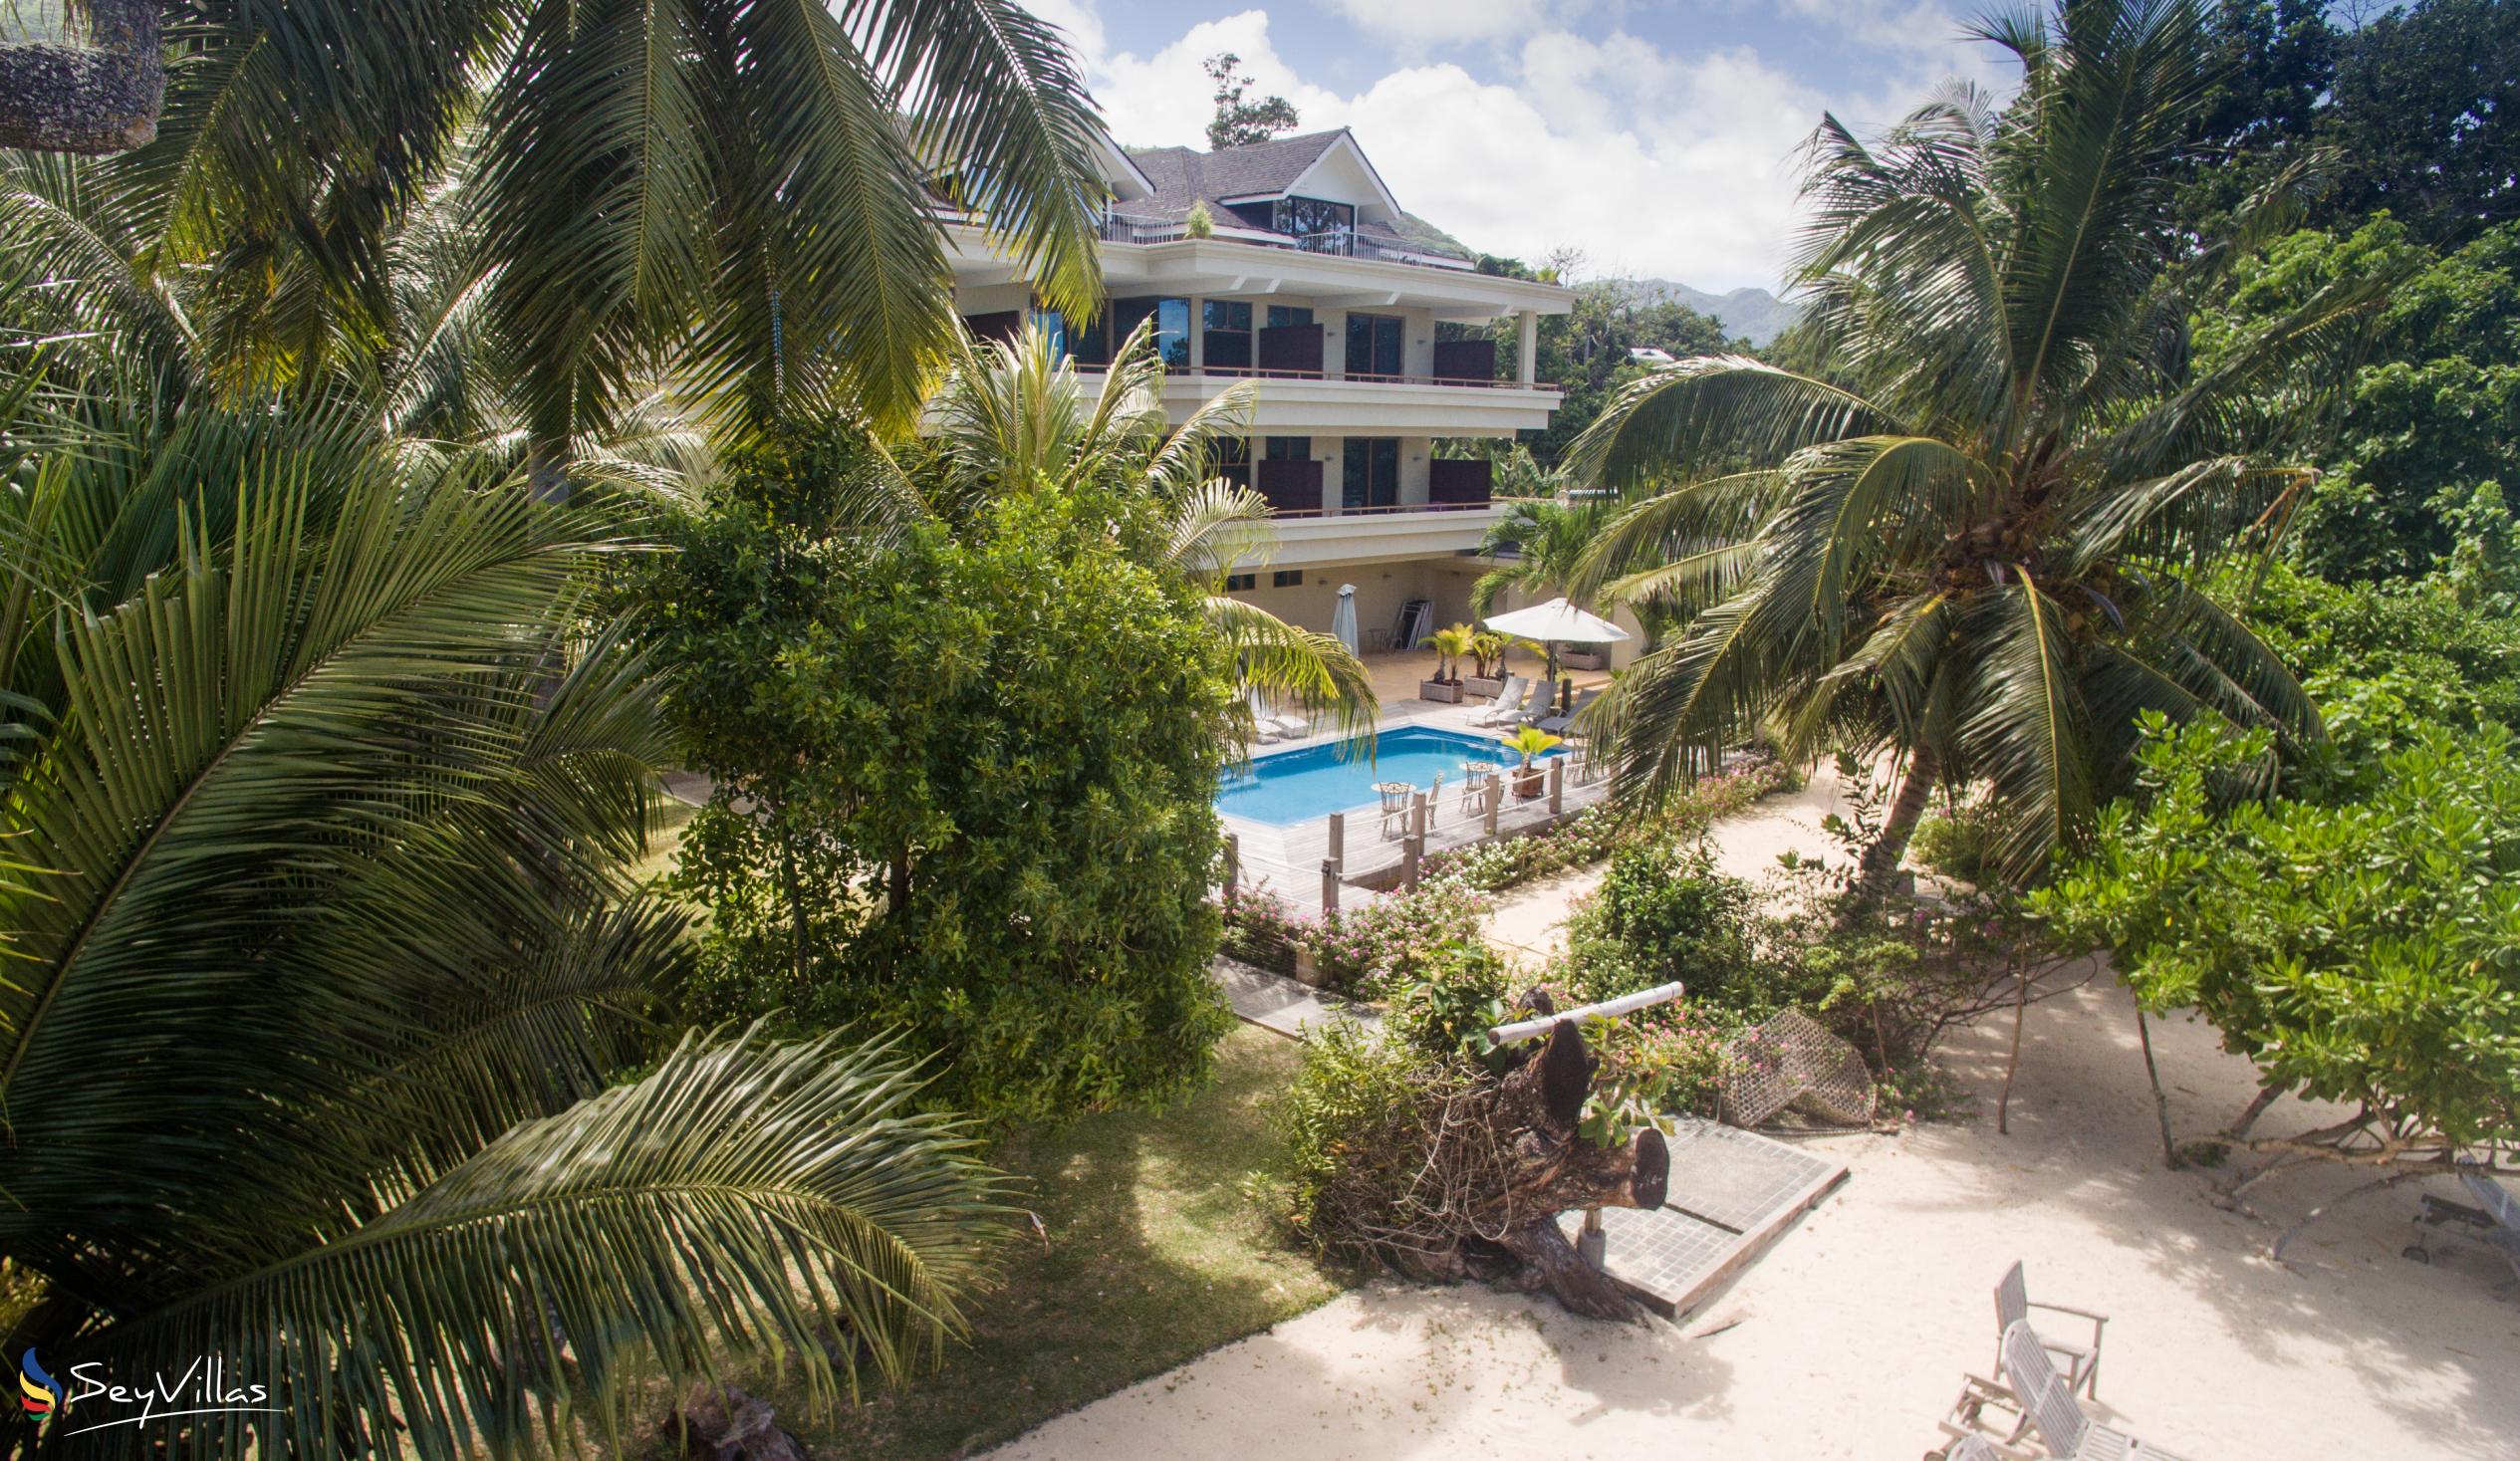 Photo 2: Crown Beach Hotel - Outdoor area - Mahé (Seychelles)